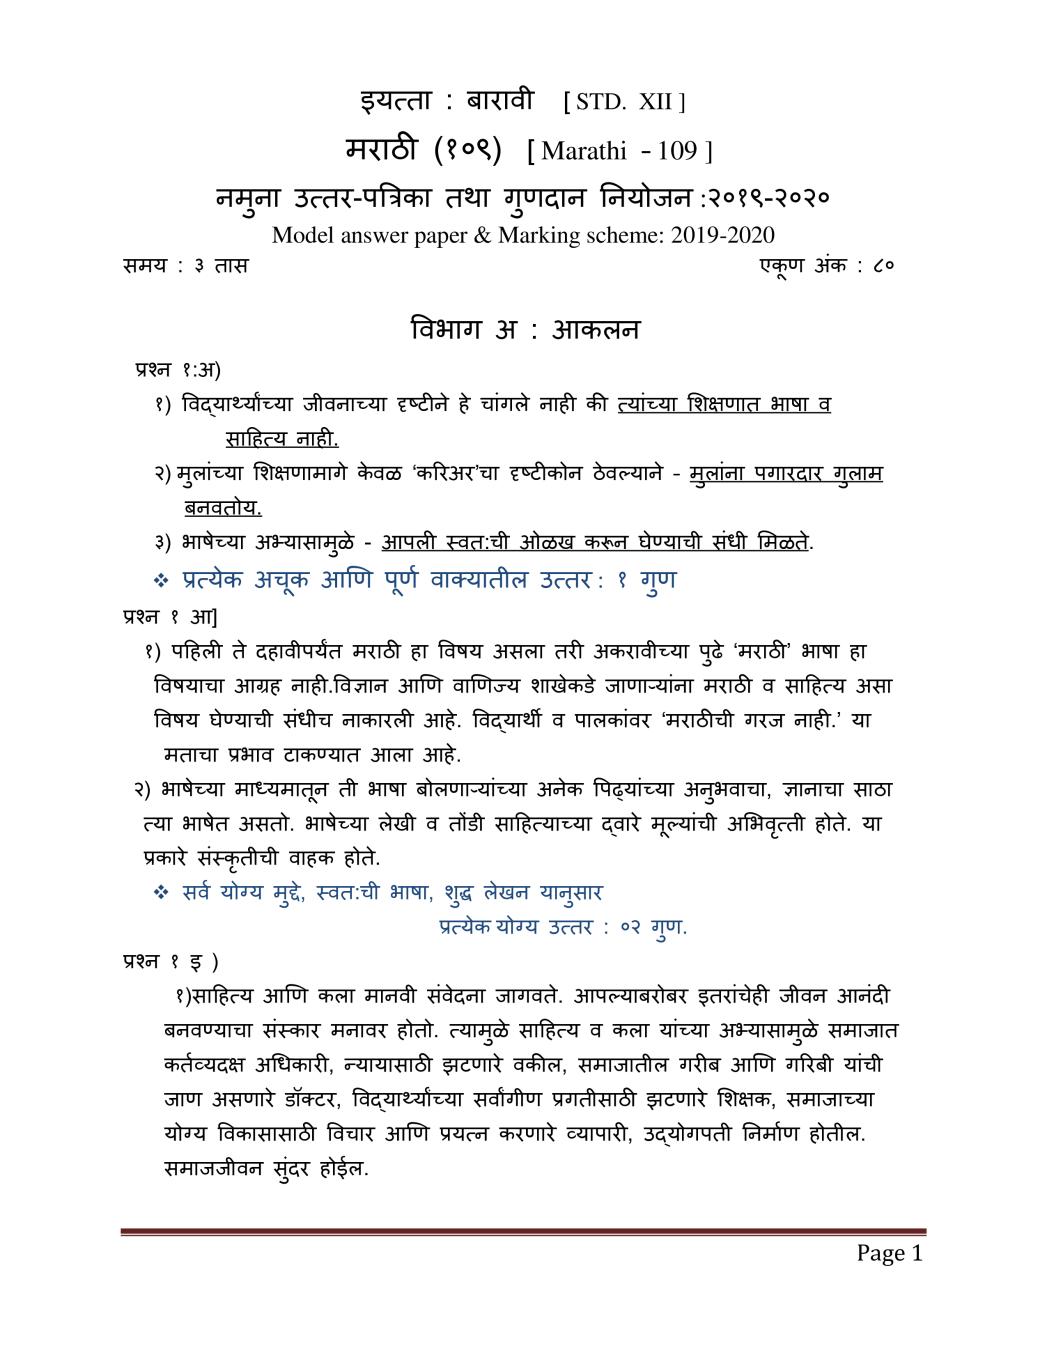 CBSE Class 12 Marking Scheme 2020 for Marathi - Page 1